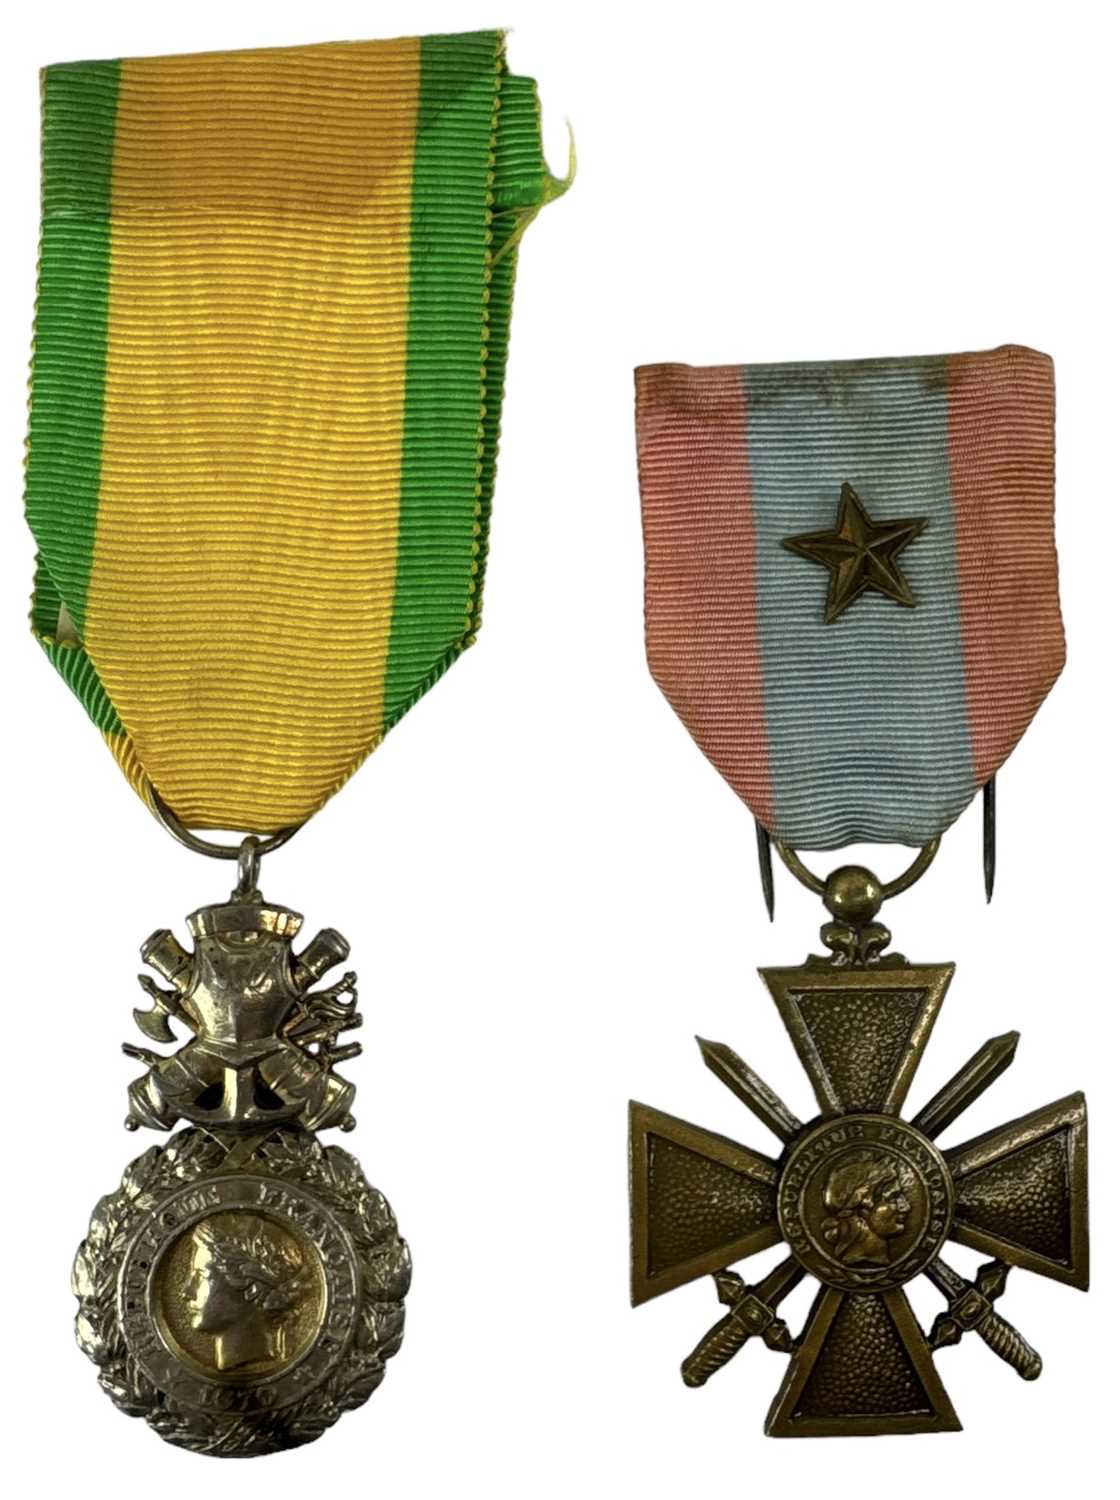 A French Medaille Militaire 5th Valeur et Discipline medal and a Croix de Guerre medal (2).